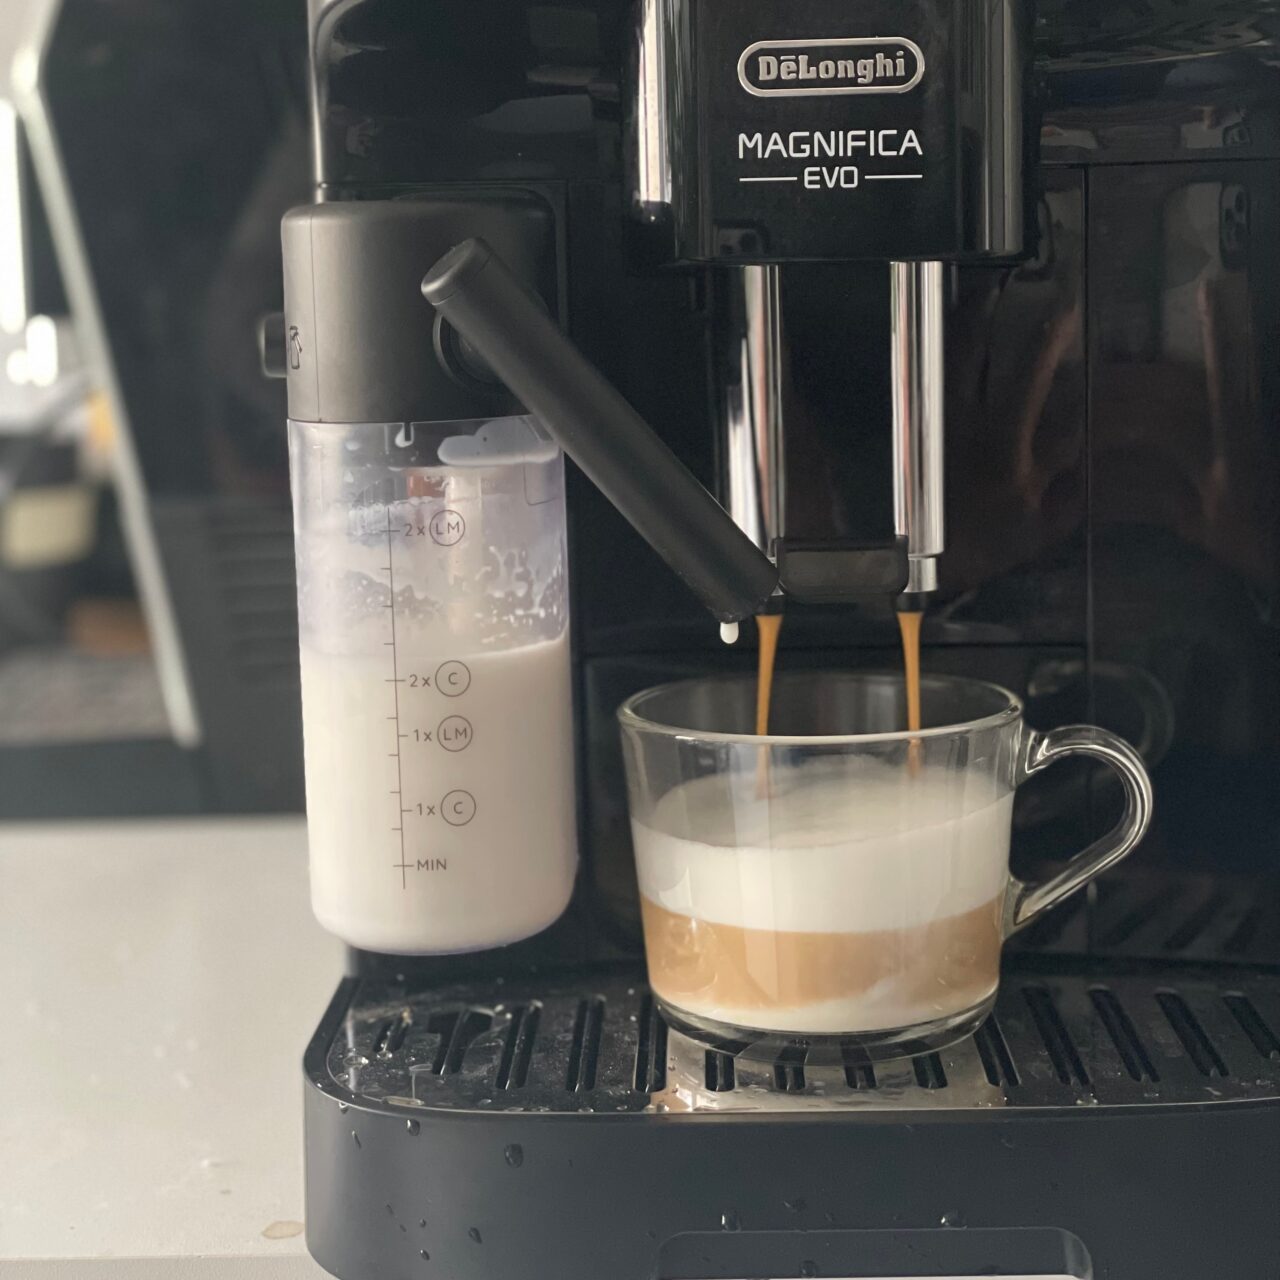 Ekspres do kawy De'Longhi Magnifica EVO zalewający espresso do przezroczystej filiżanki, obok pojemnik z mlekiem.